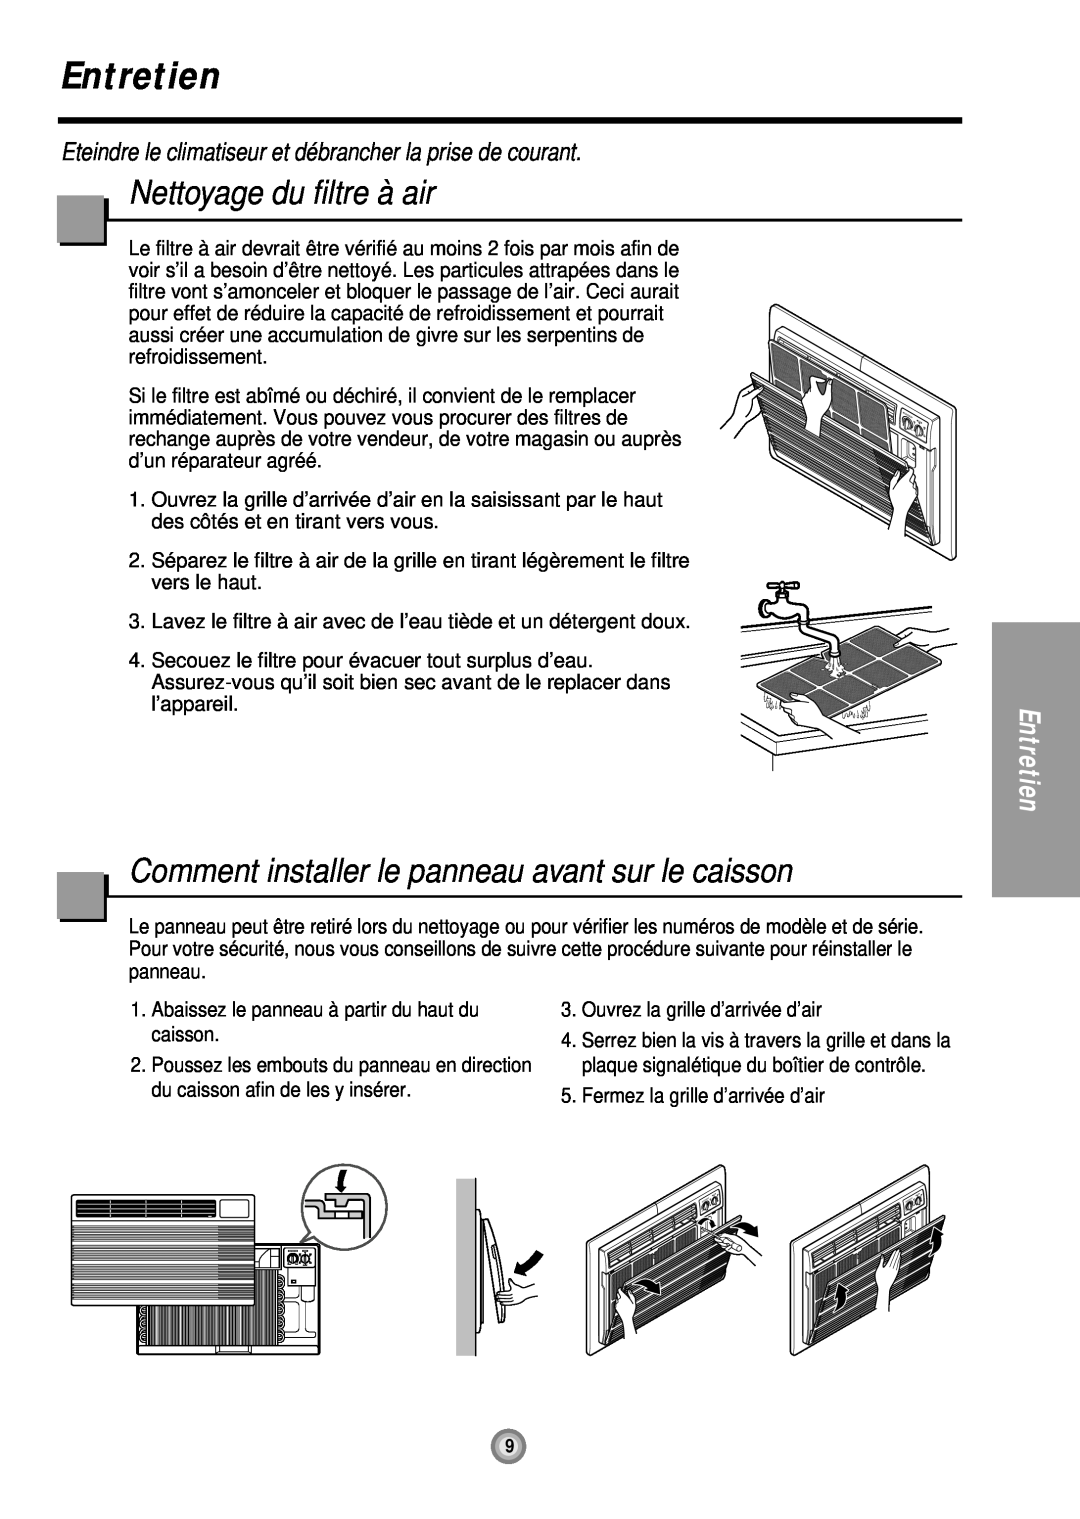 Friedrich UE08, UE12, UE10 manual Entretien, Nettoyage du filtre à air, Comment installer le panneau avant sur le caisson 